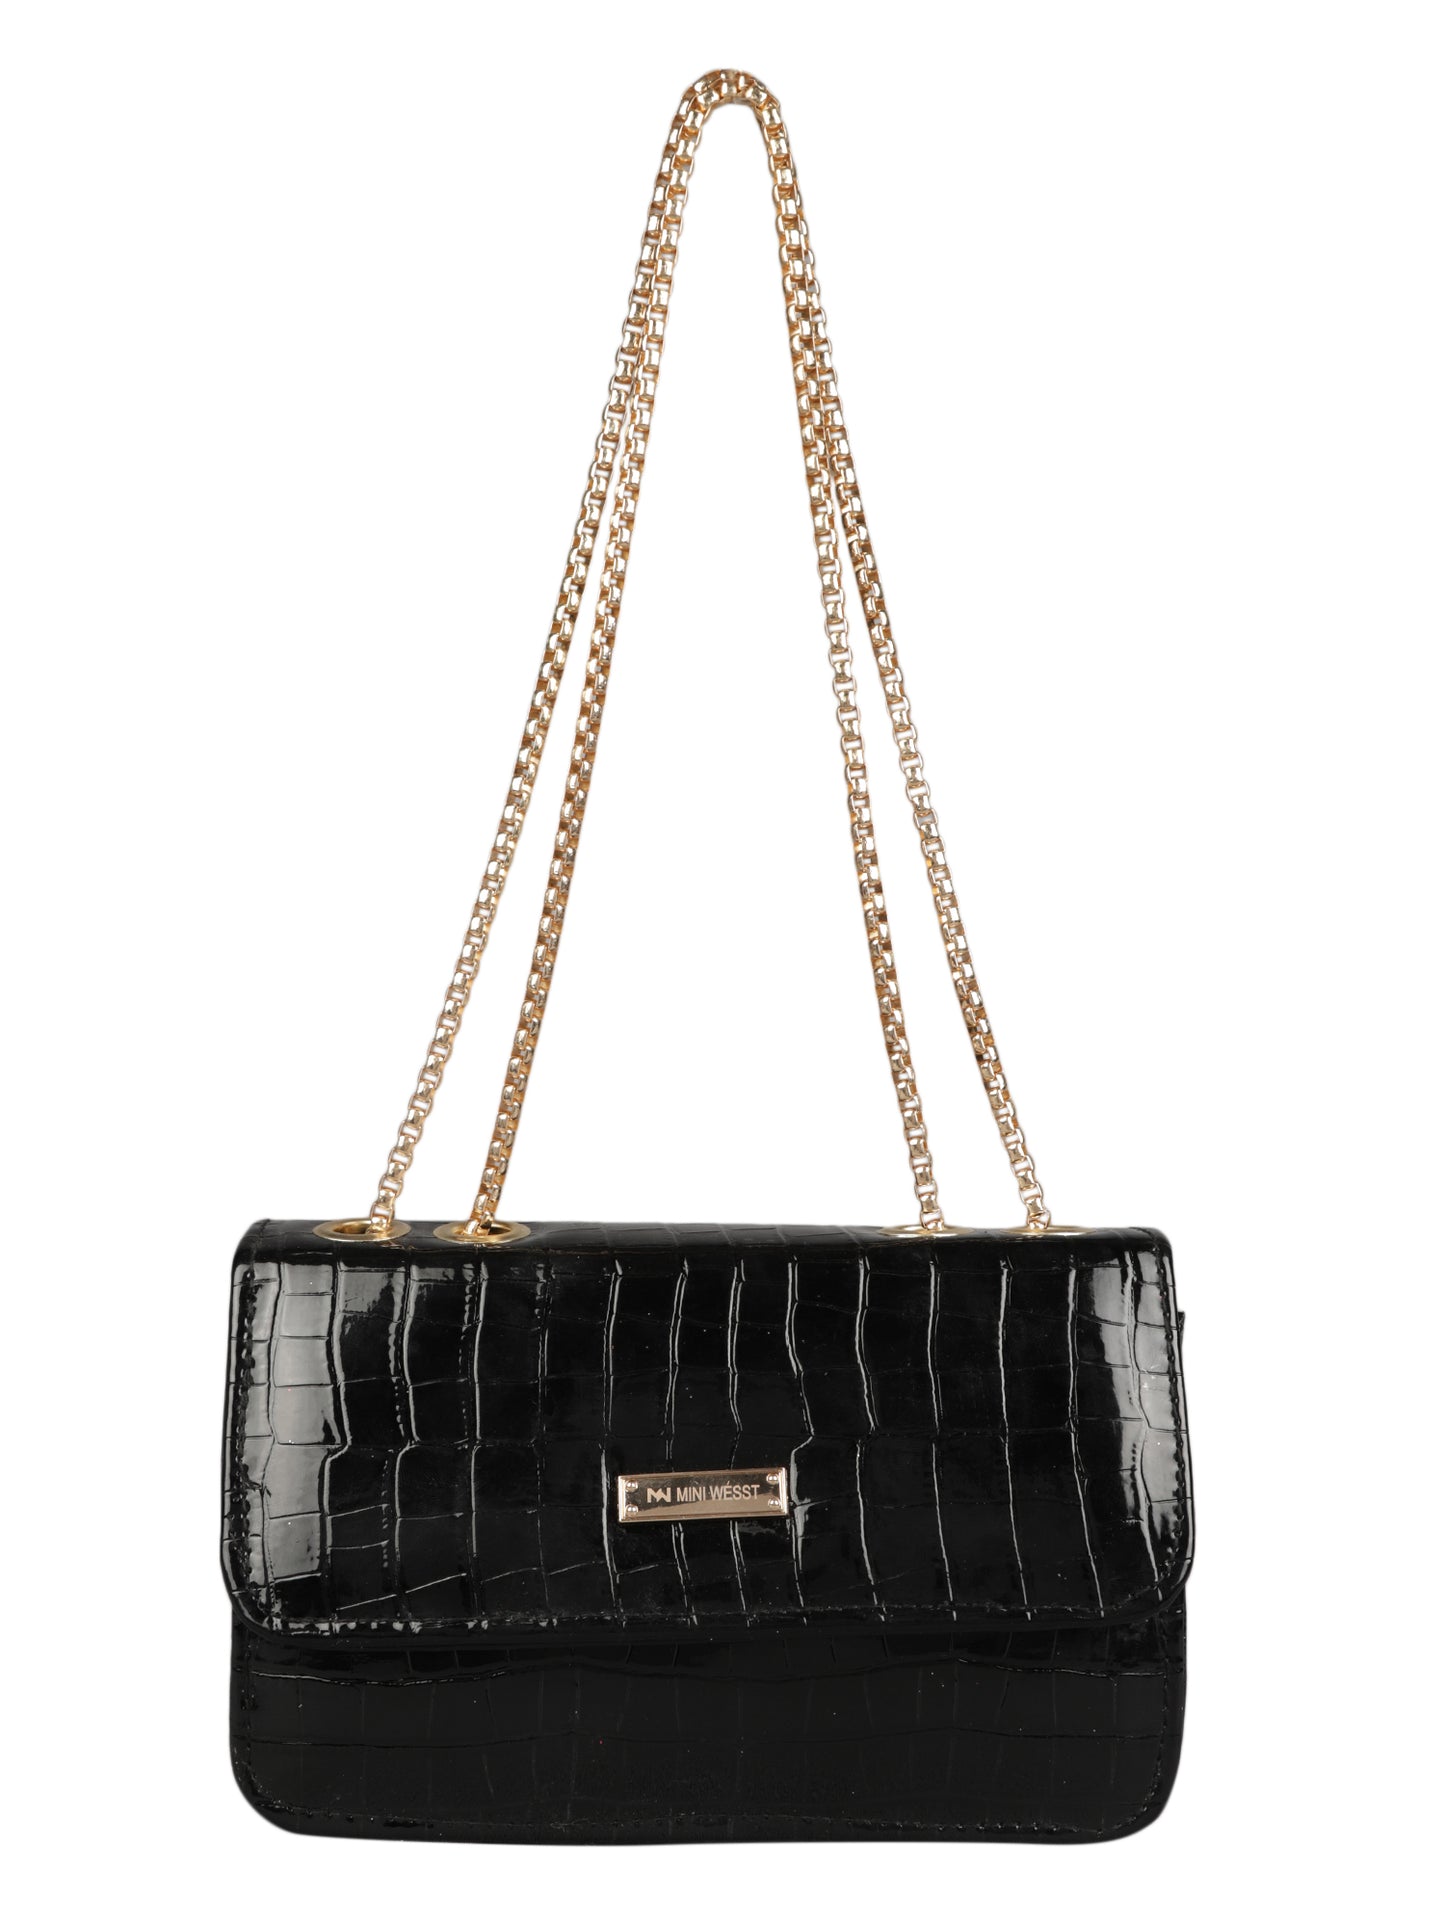 MINI WESST Women's Black Handbags(MWHB012BL)